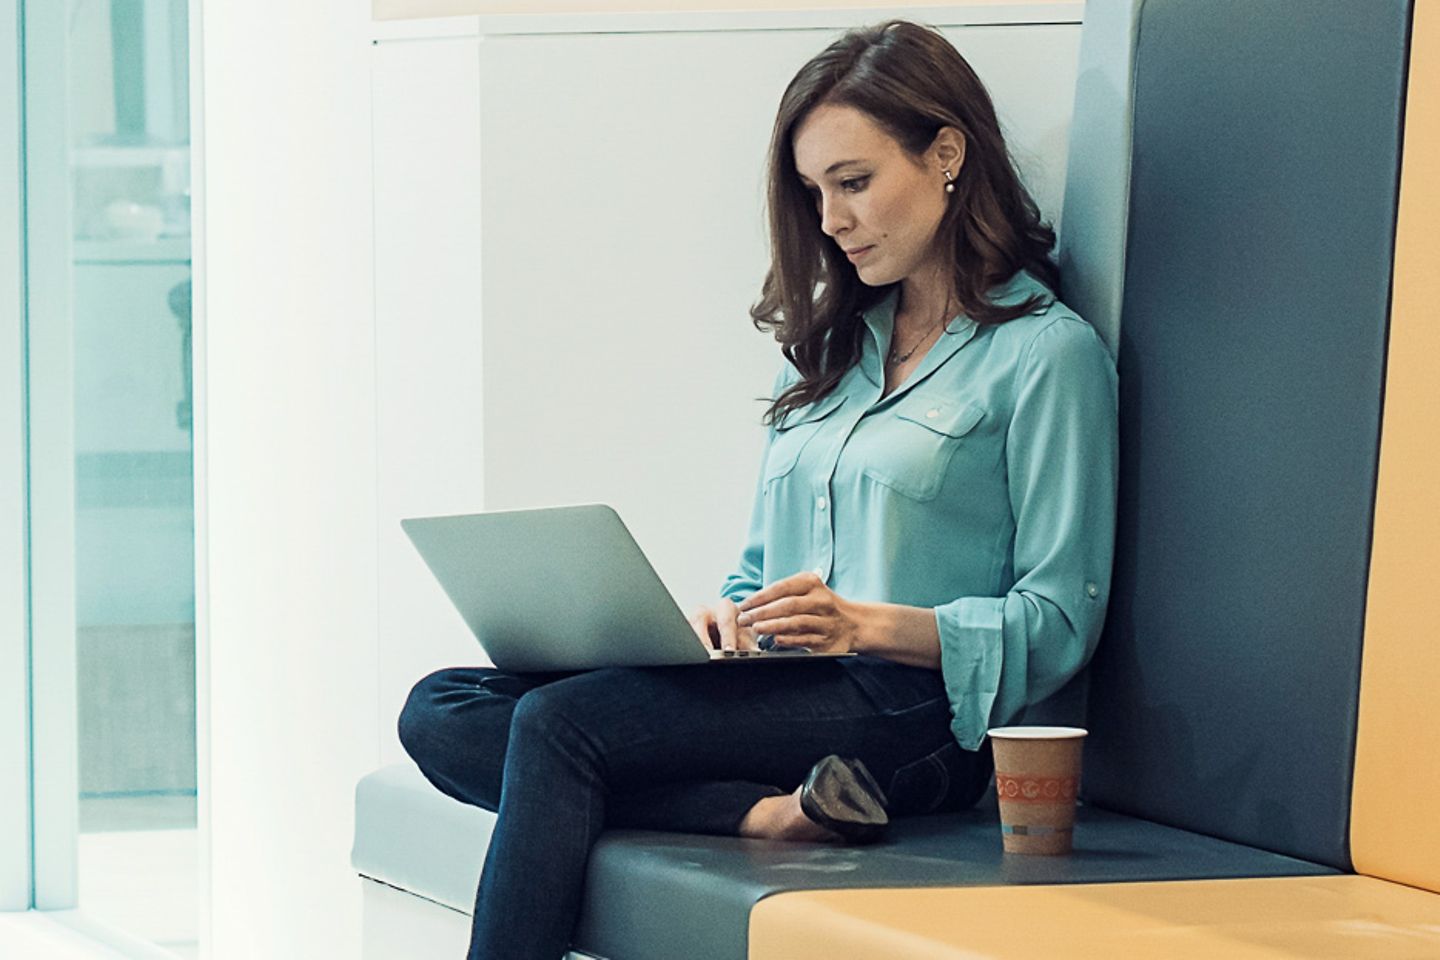 Mujer joven sentada con un laptop en su regazo en un pasillo iluminado de una oficina